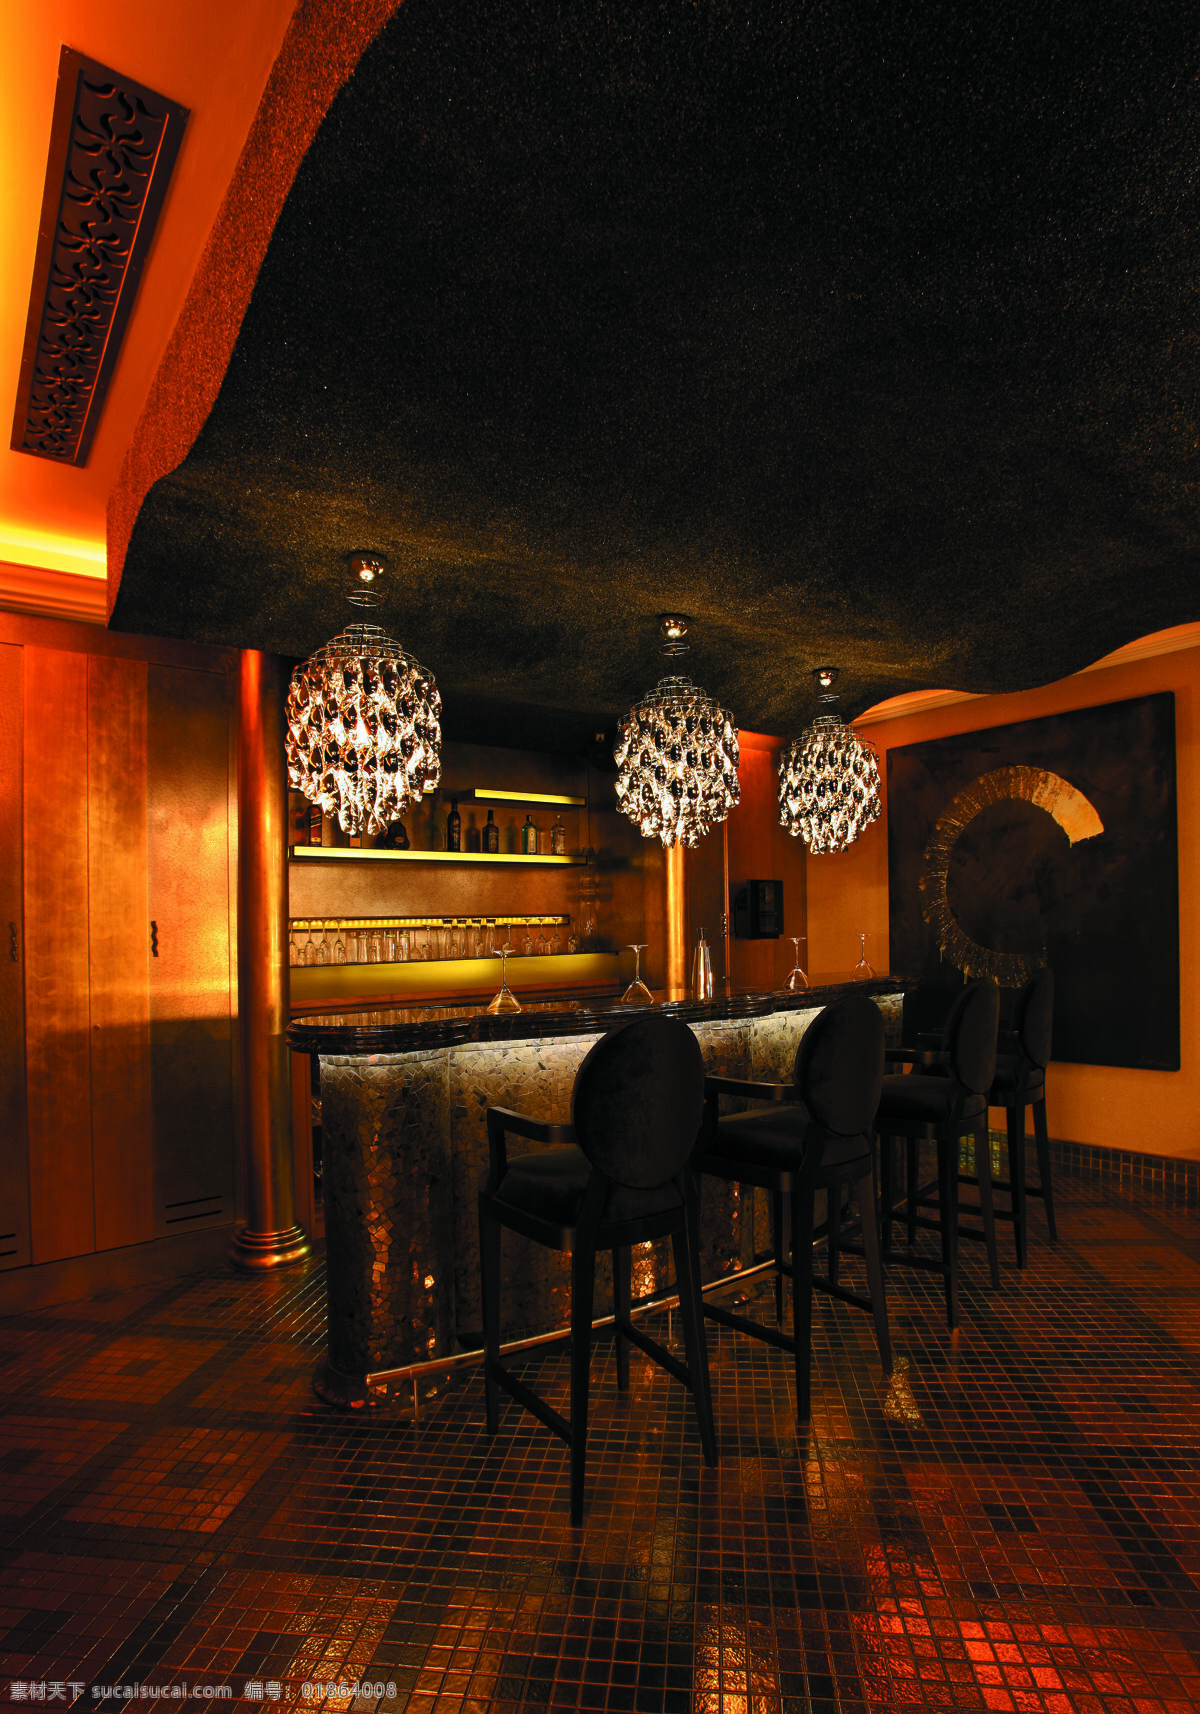 酒店 吧台 迪拜 吊灯 建筑园林 酒店吧台 室内设计 室内摄影 五星级酒店 西餐厅 香格里拉酒店 新古典 装饰素材 灯饰素材